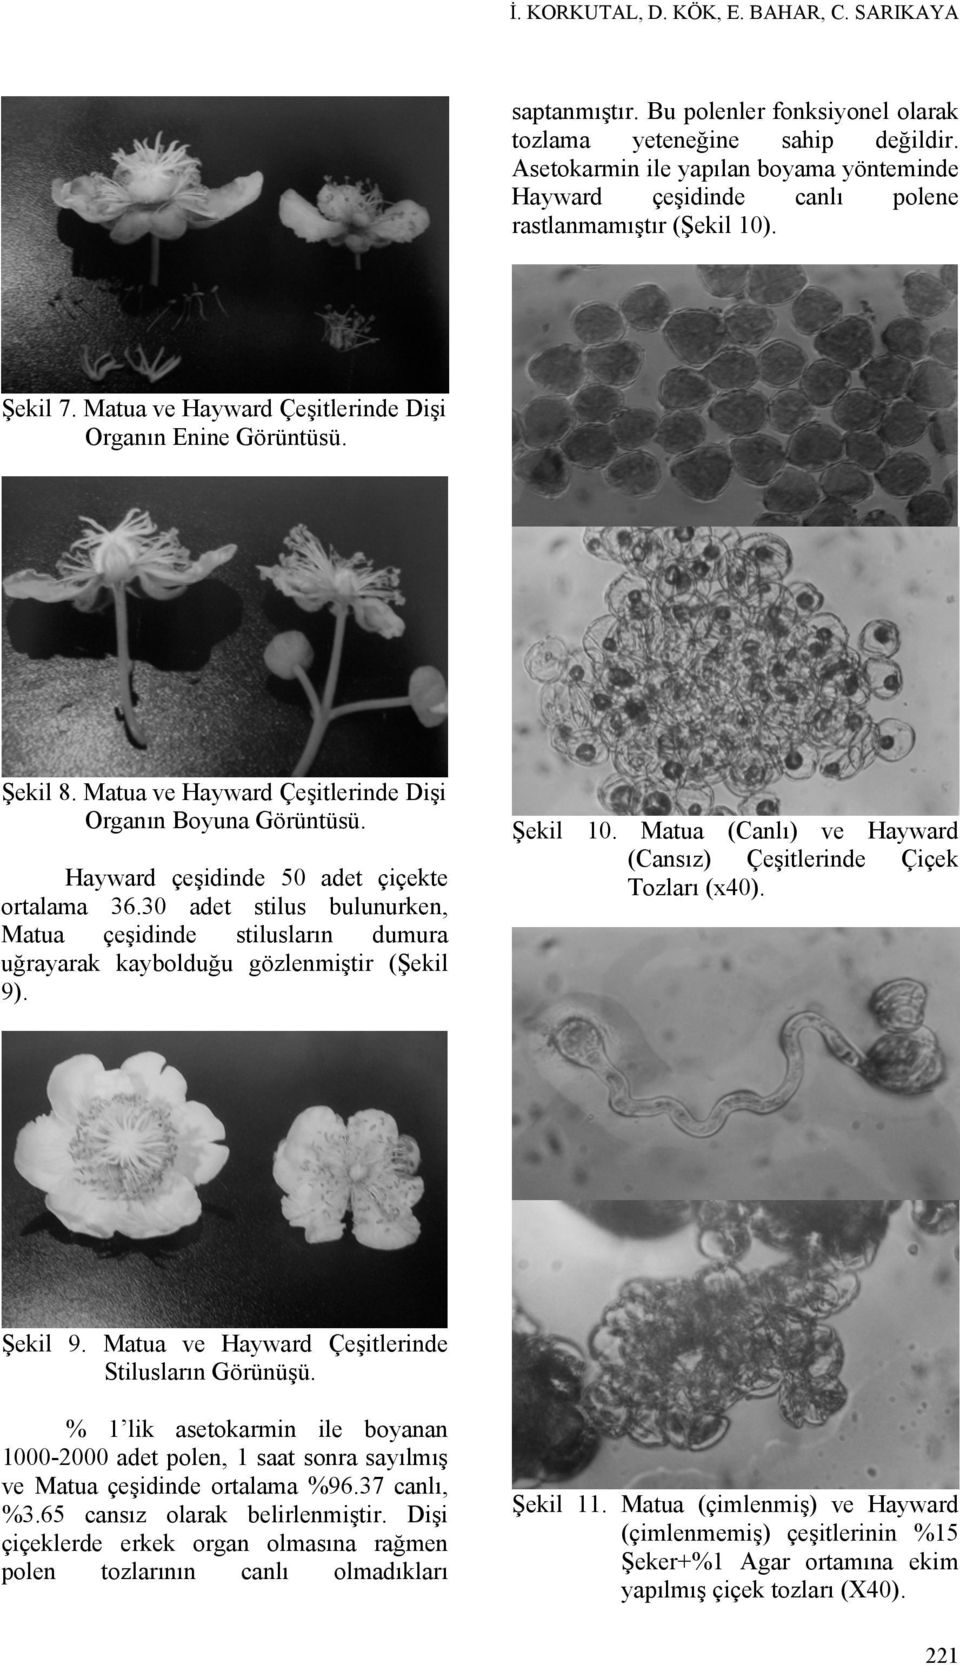 Matua ve Hayward Çeşitlerinde Dişi Organın Boyuna Görüntüsü. Hayward çeşidinde 50 adet çiçekte ortalama 36.